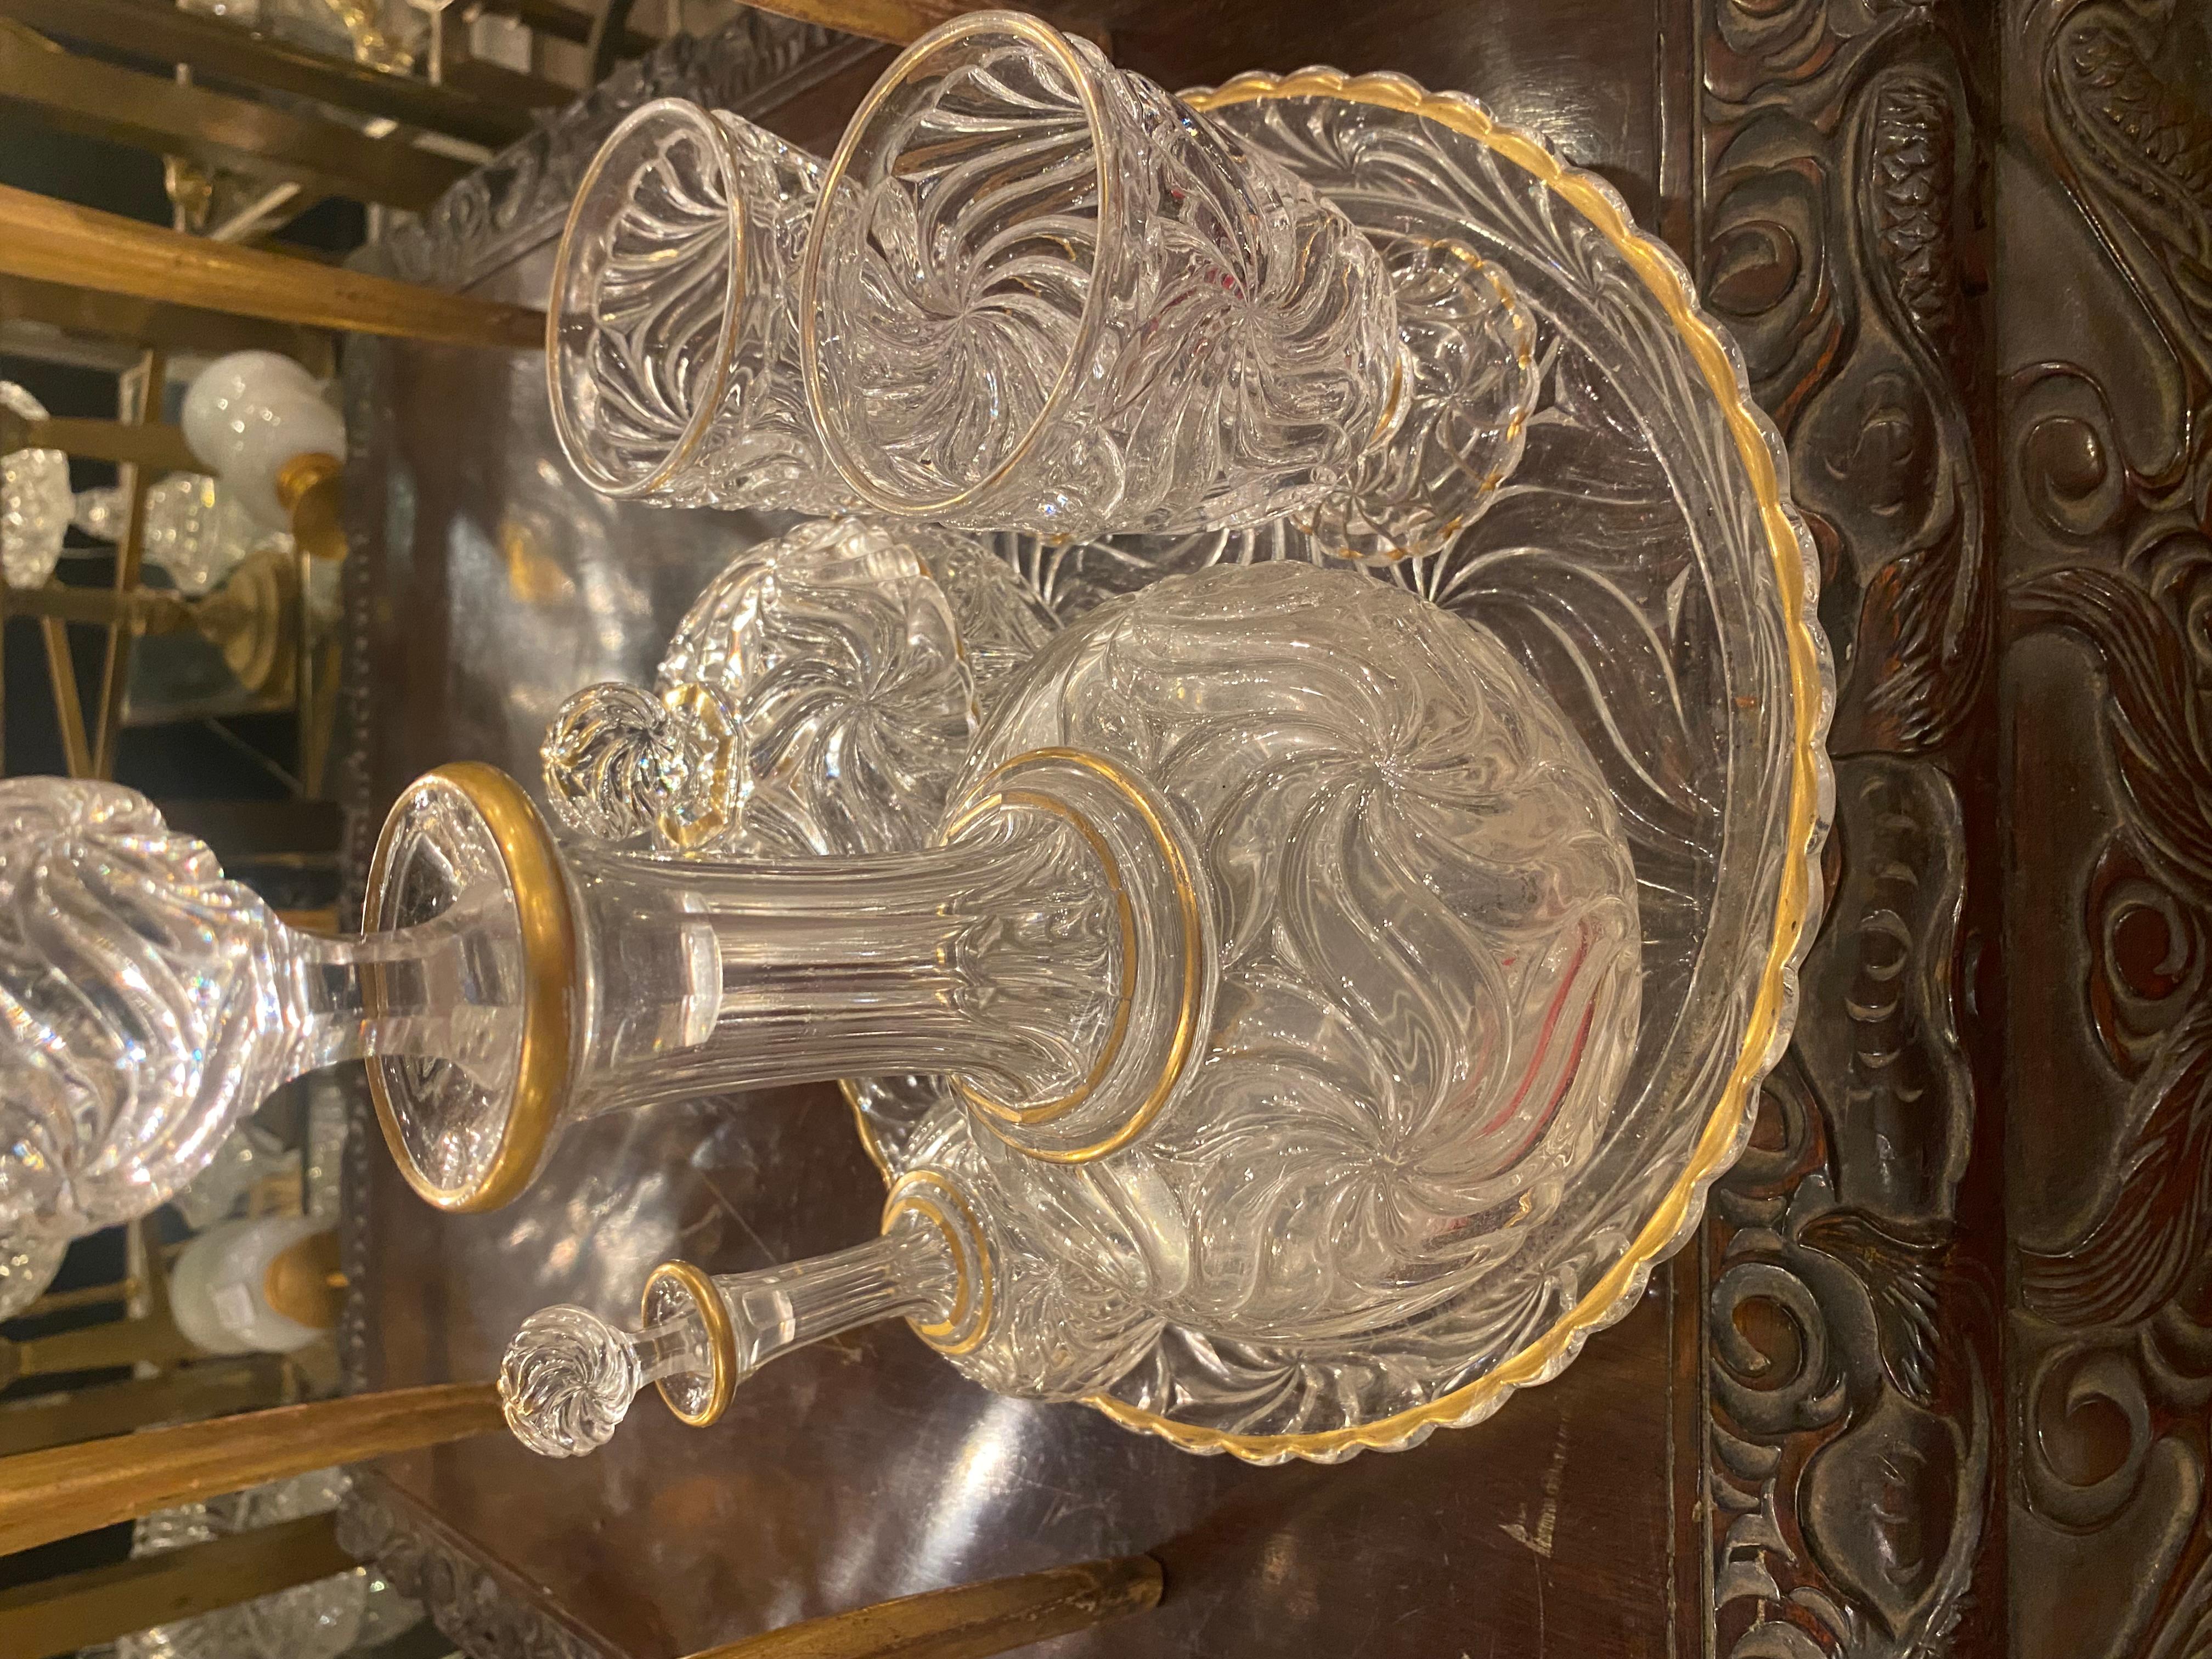 Nachtservice aus Baccarat-Kristall, signiert und vergoldet
1 runde Schale, Durchmesser 29 cm
2 Dekanter
2 Gläser
1 Bonbondose
Bedingung für die Nutzung
Dekor Seestern 